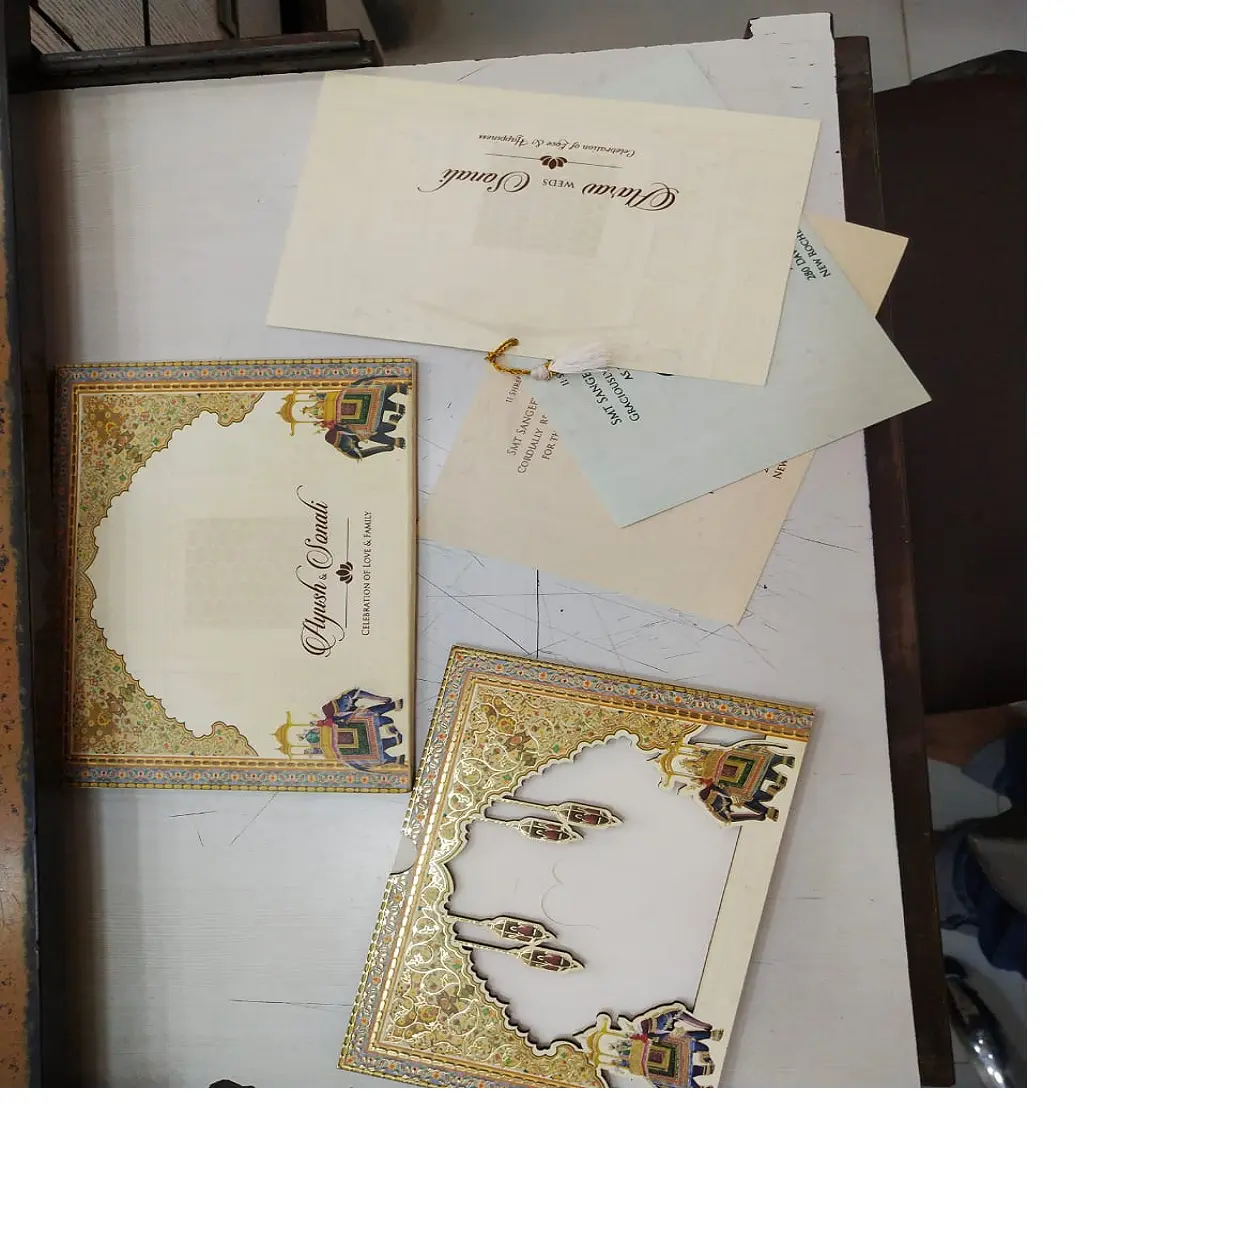 कस्टम मेड सफेद रंग आधार कागज लकड़ी शादी के कार्ड के साथ कस्टम प्रिंटों के साथ पुनर्विक्रय के लिए आदर्श और मुद्रित किया जा सकता है अपने पाठ